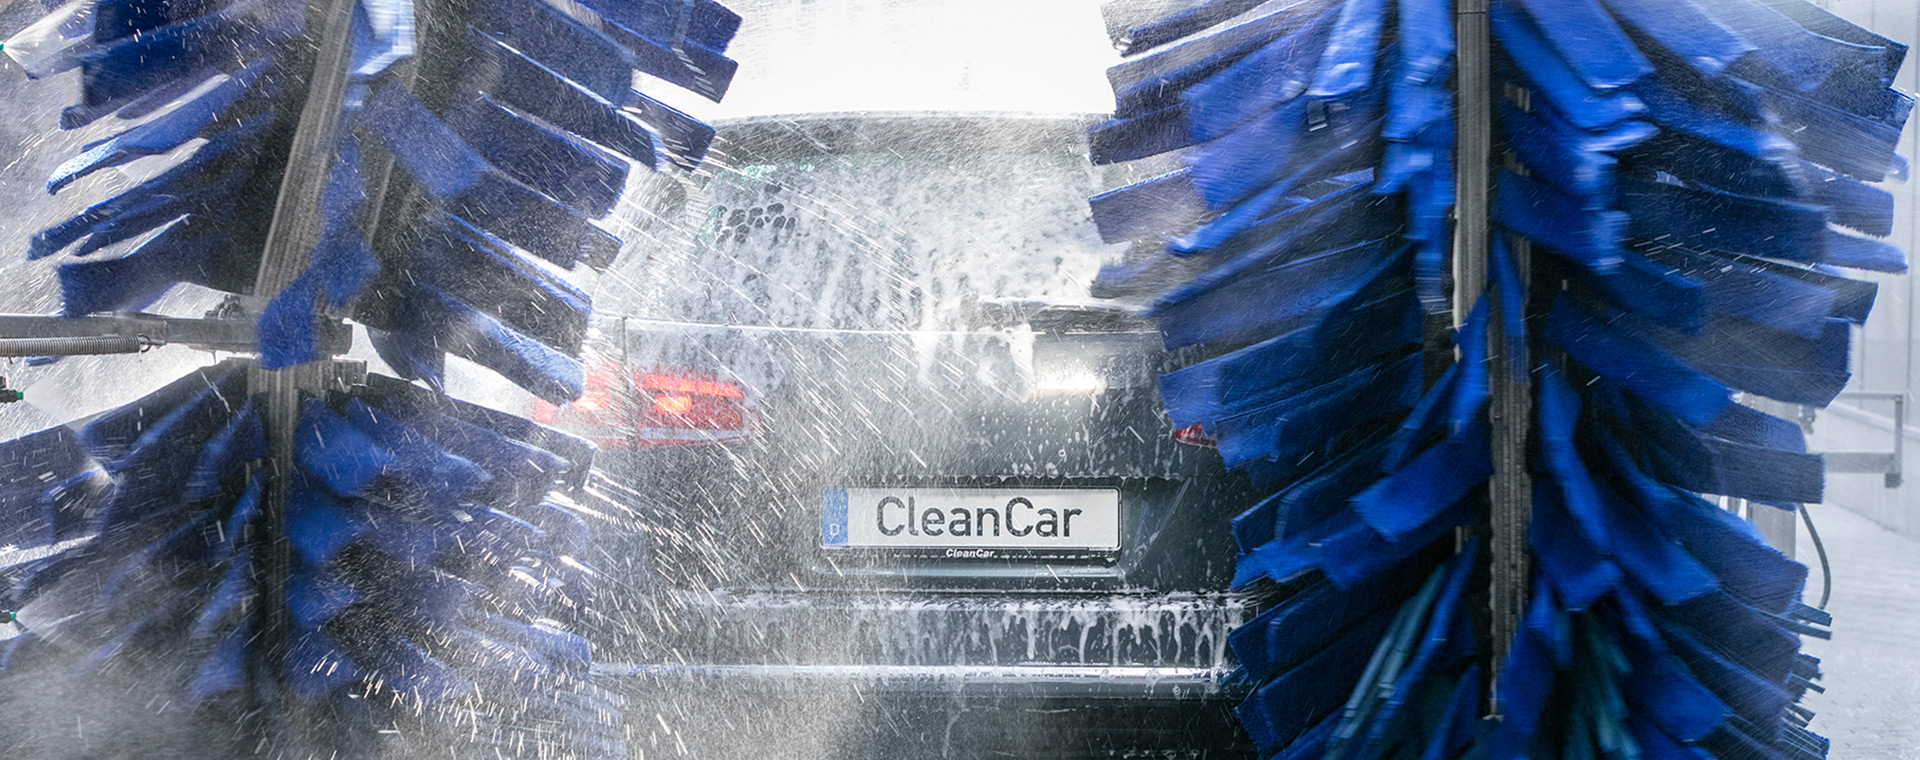 Startseite ǀ CleanCar